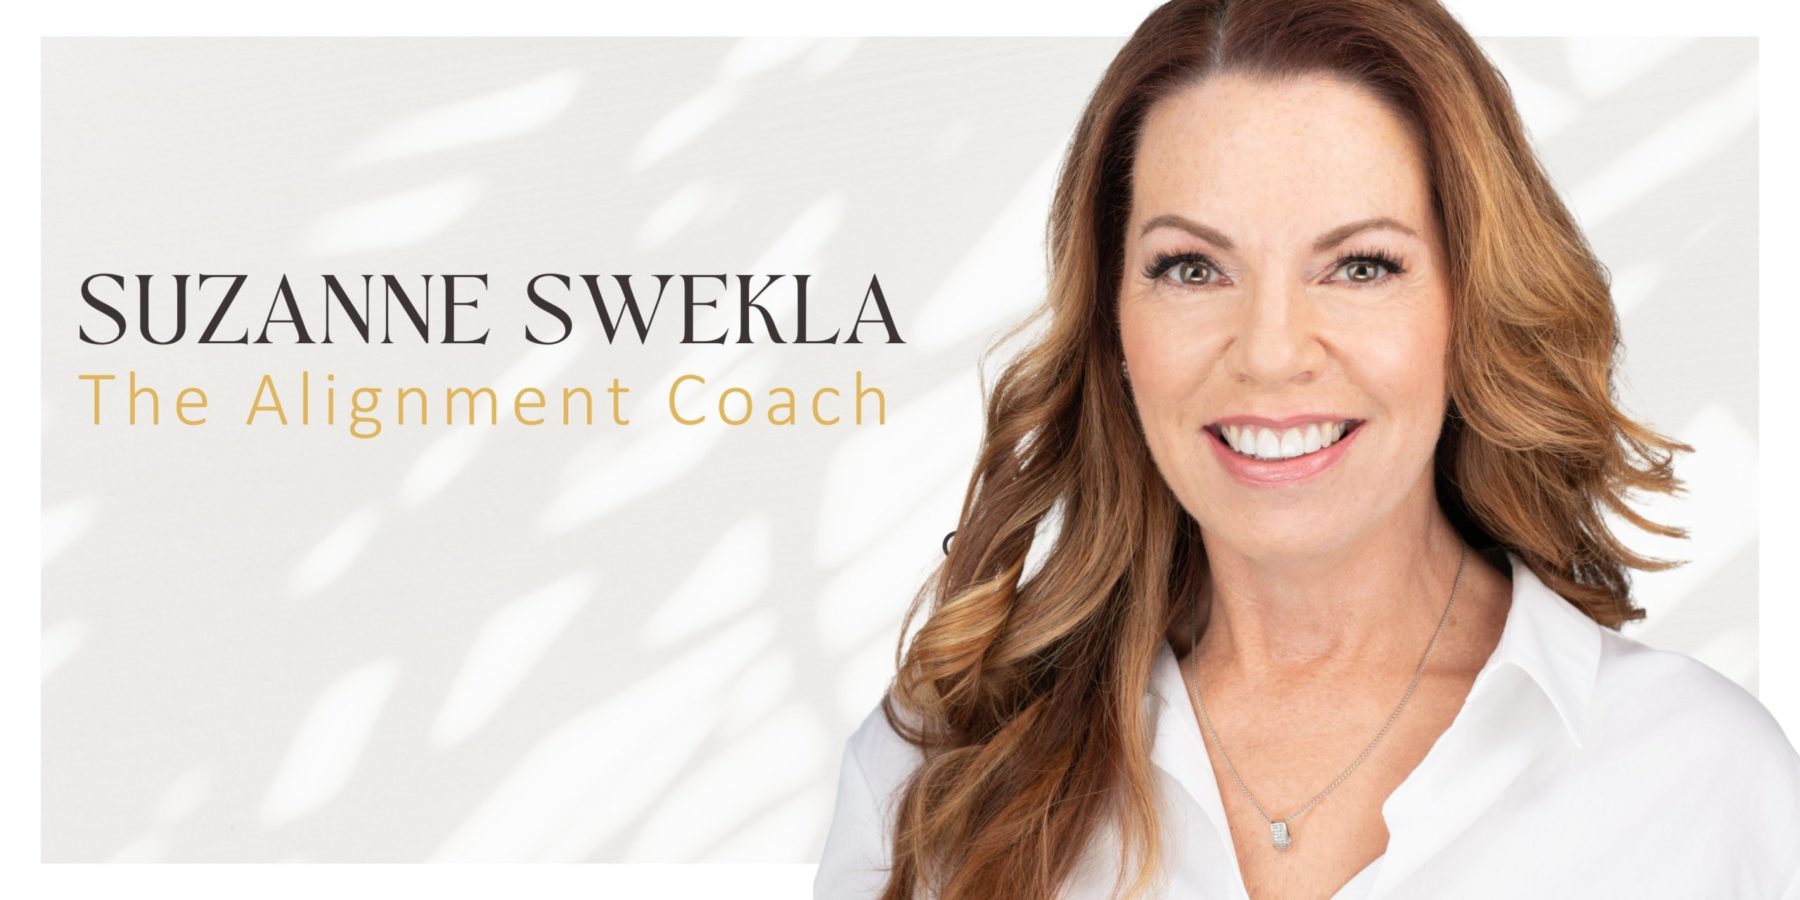 Suzanne Swekla The Alignment Coach